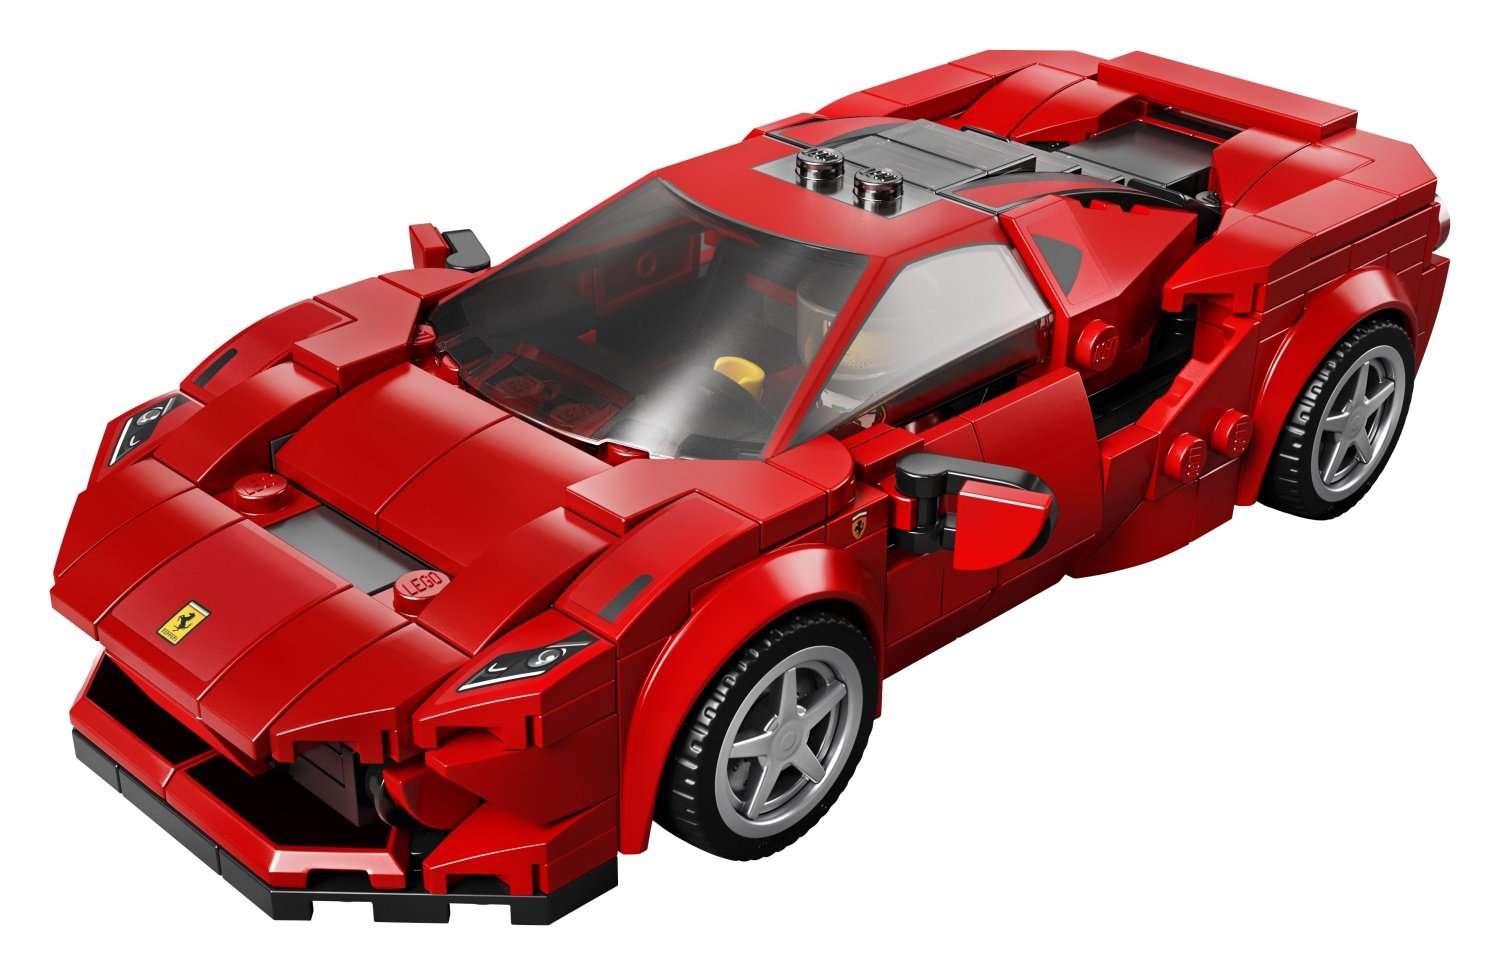 Immagini dei nuovi set LEGO Speed Champions previsti per la prima metà